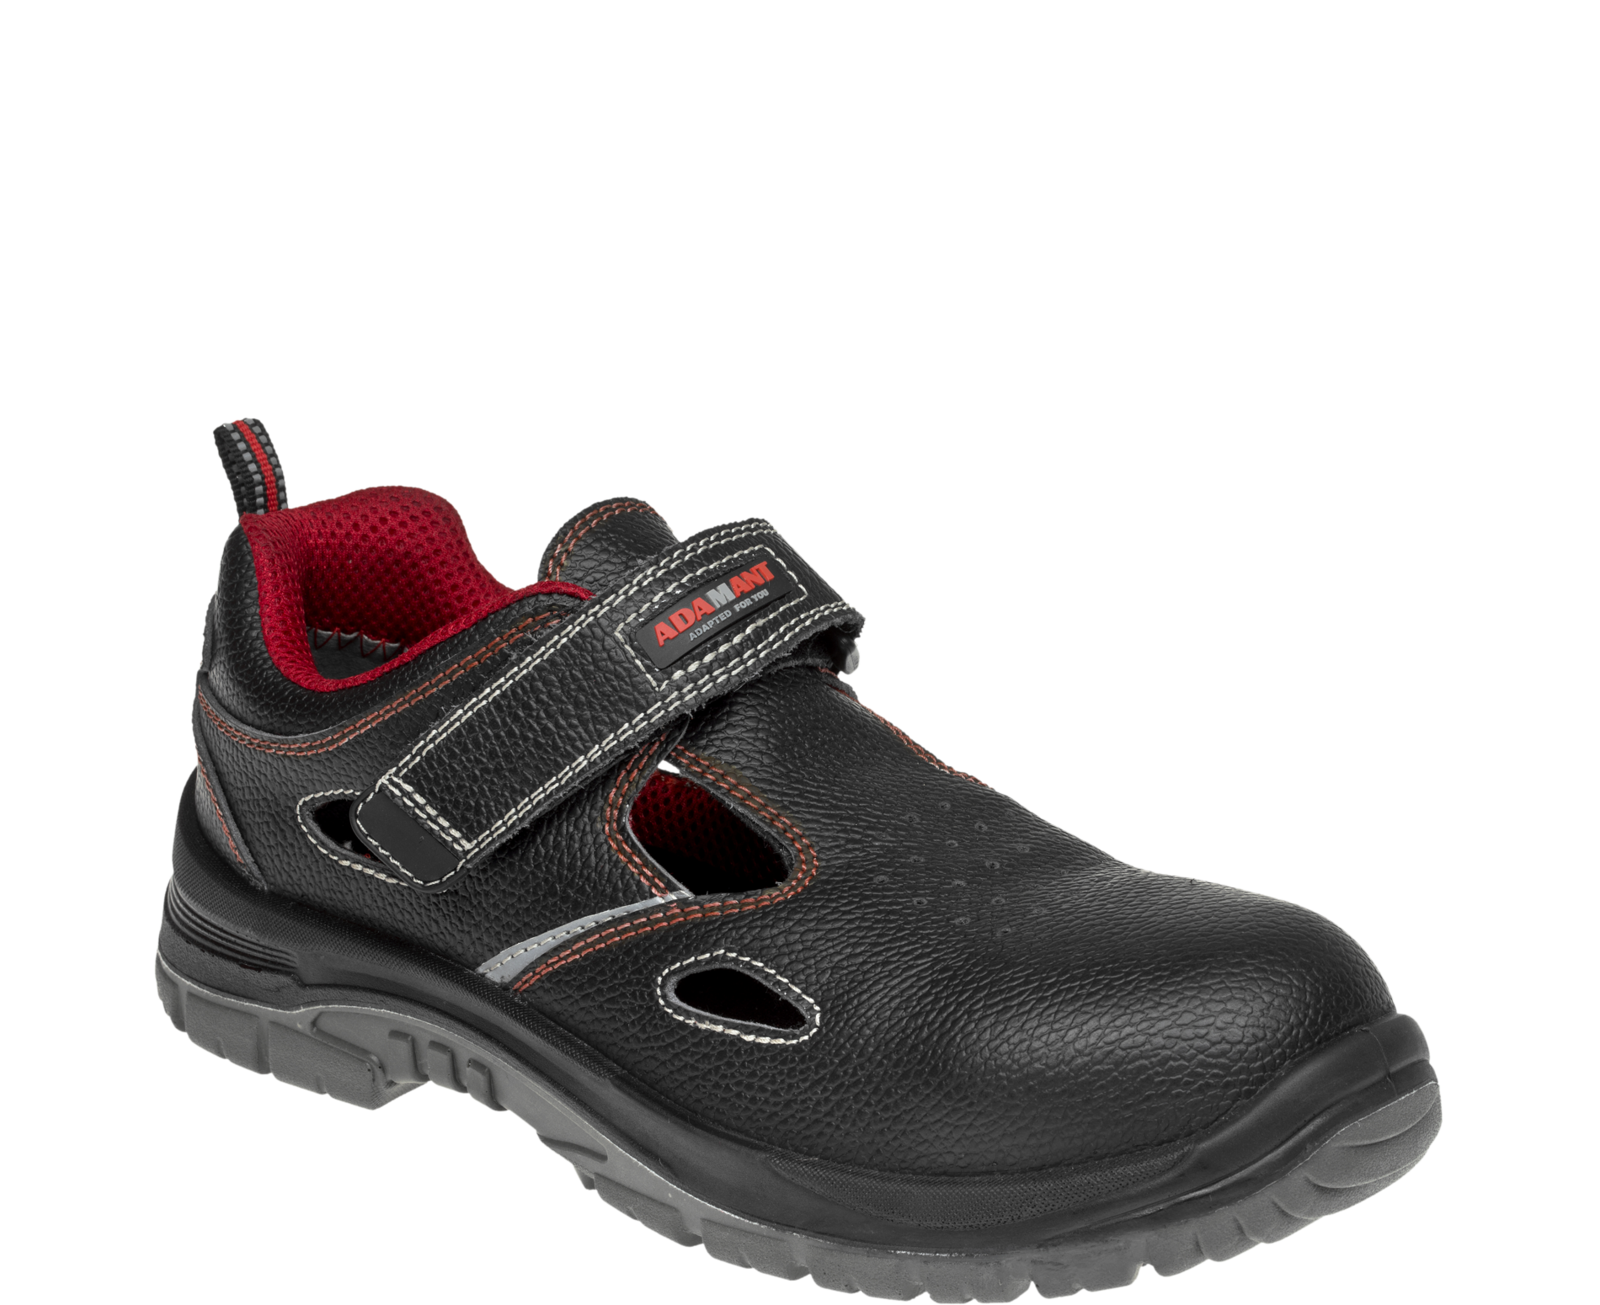 Bezpečnostné sandále Adamant Non Metallic S1 SRC - veľkosť: 38, farba: čierna/červená